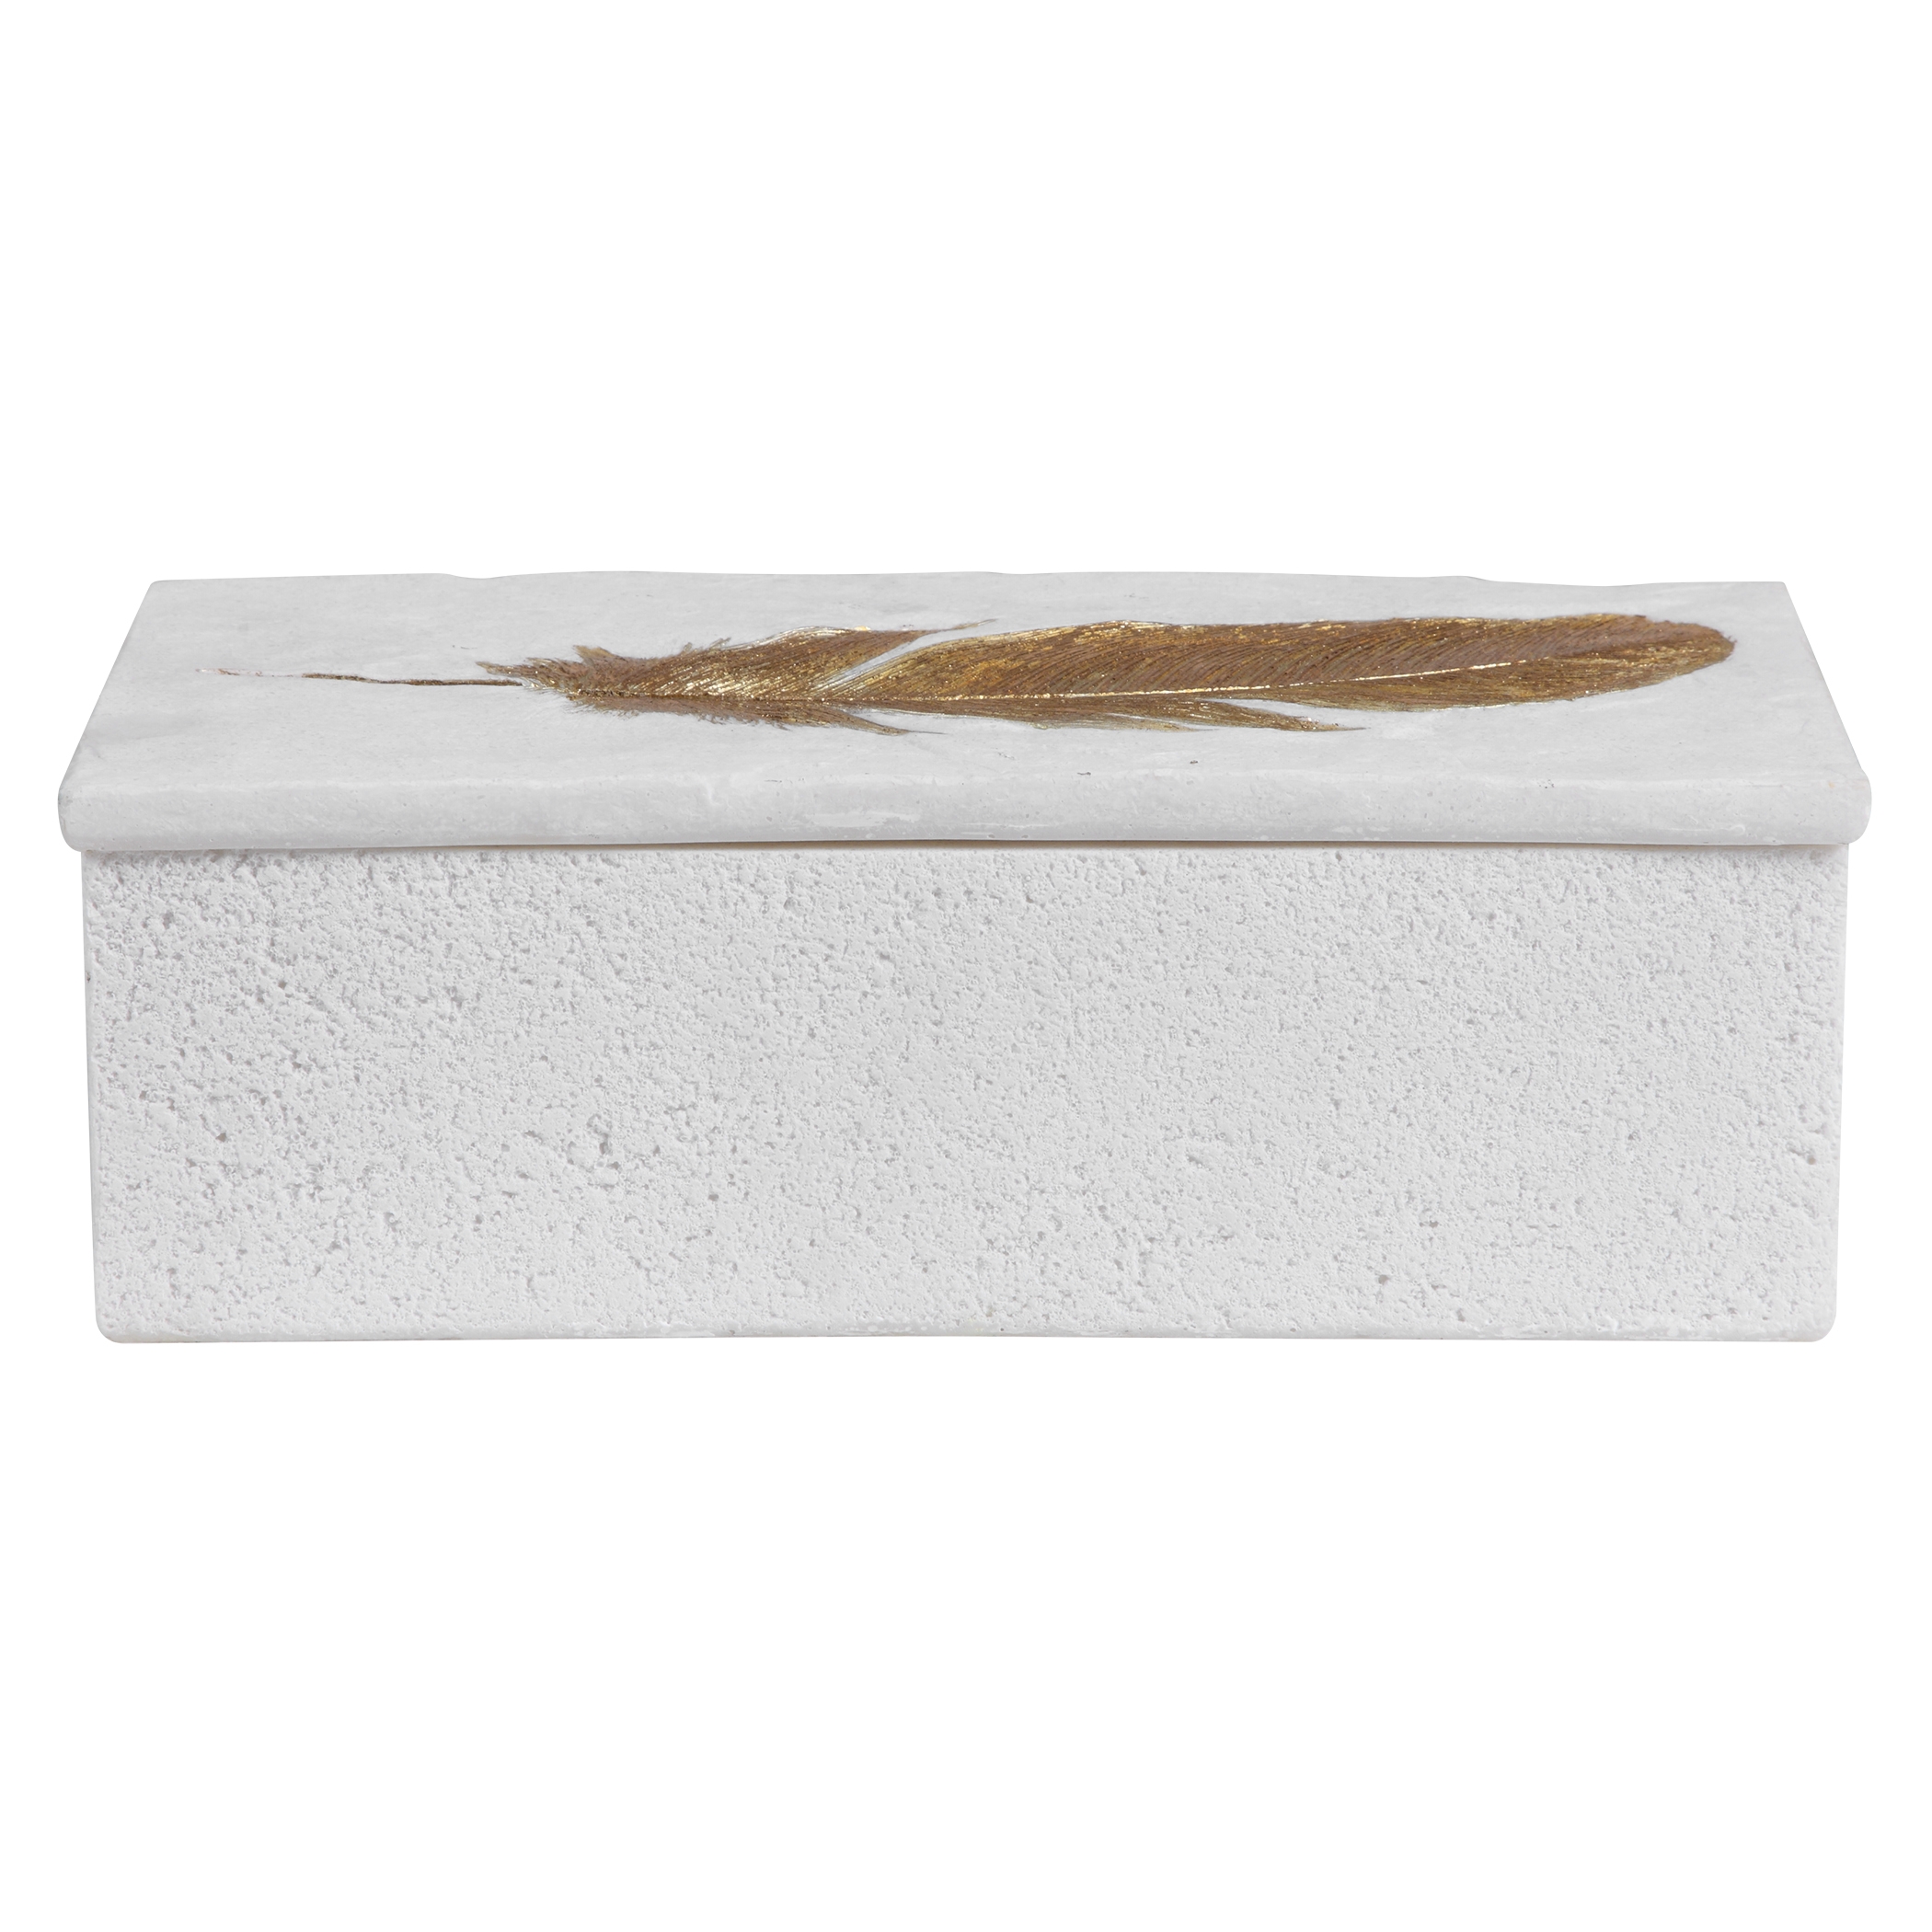 Nephele Stone Box, White - Image 1